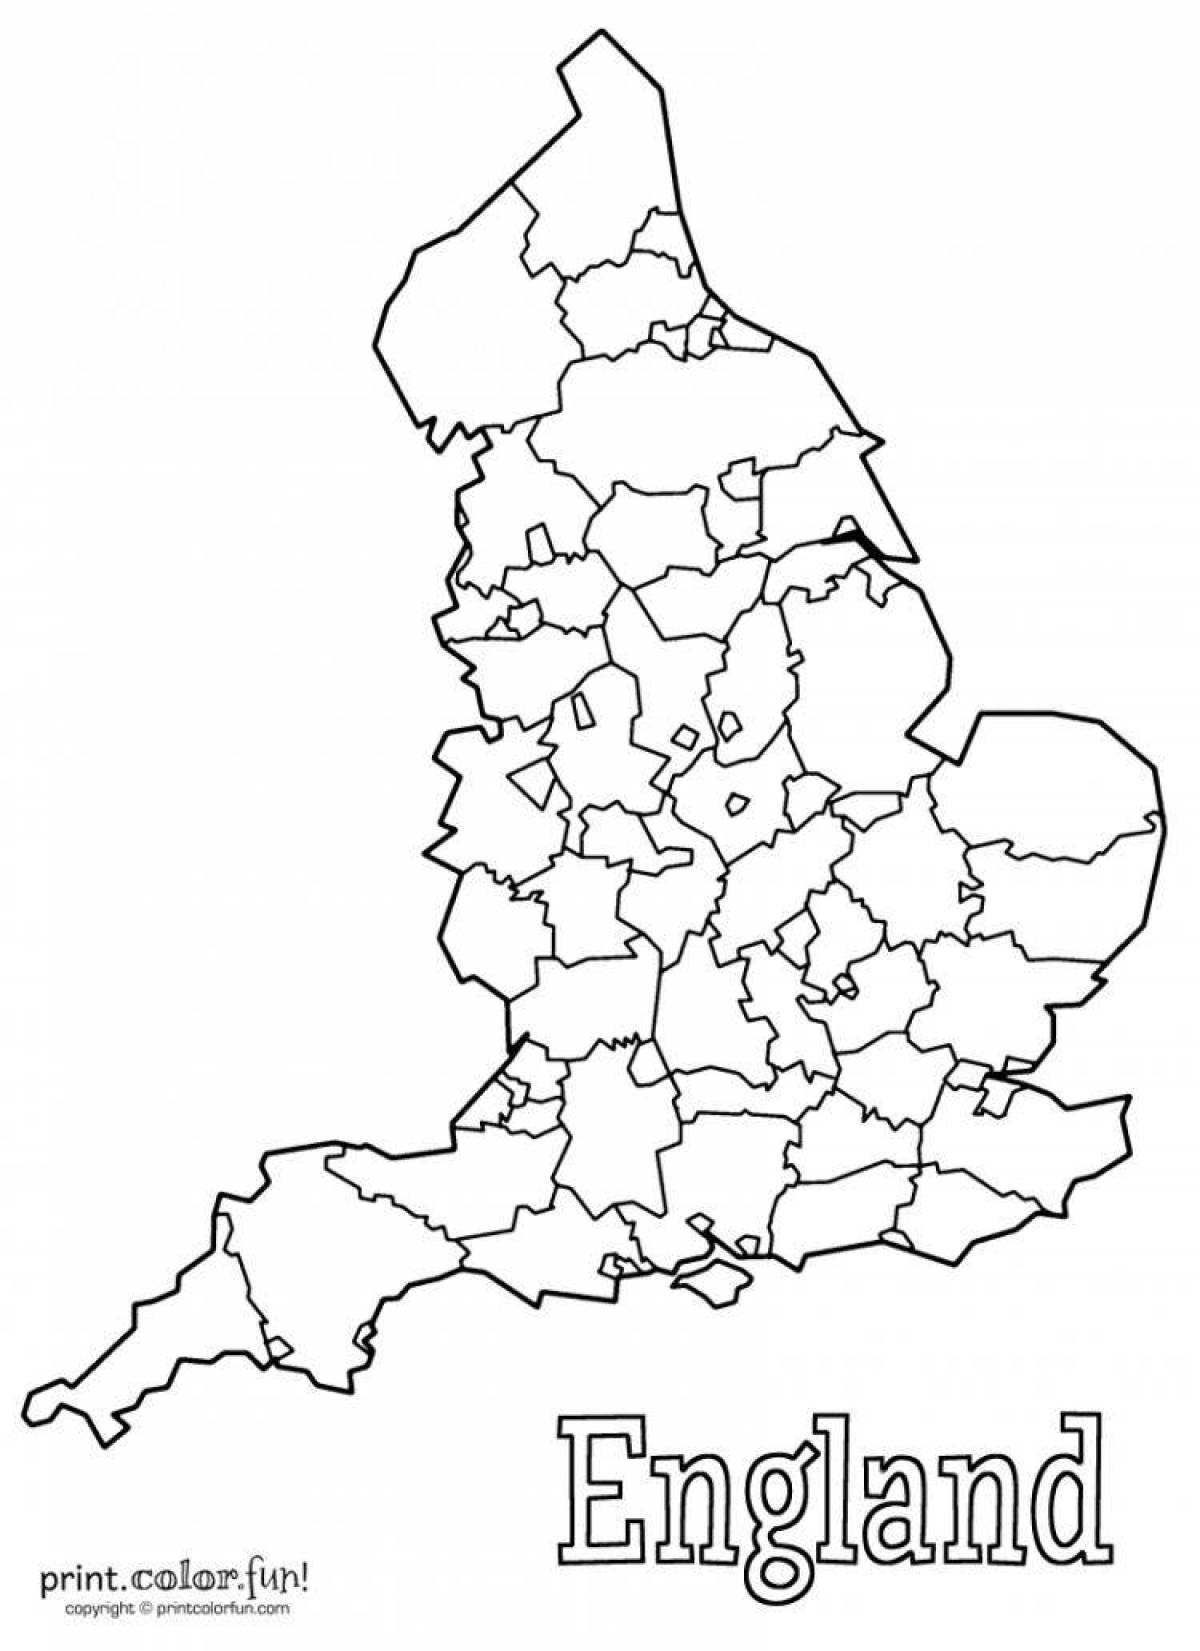 Карта Великобритании раскрасить